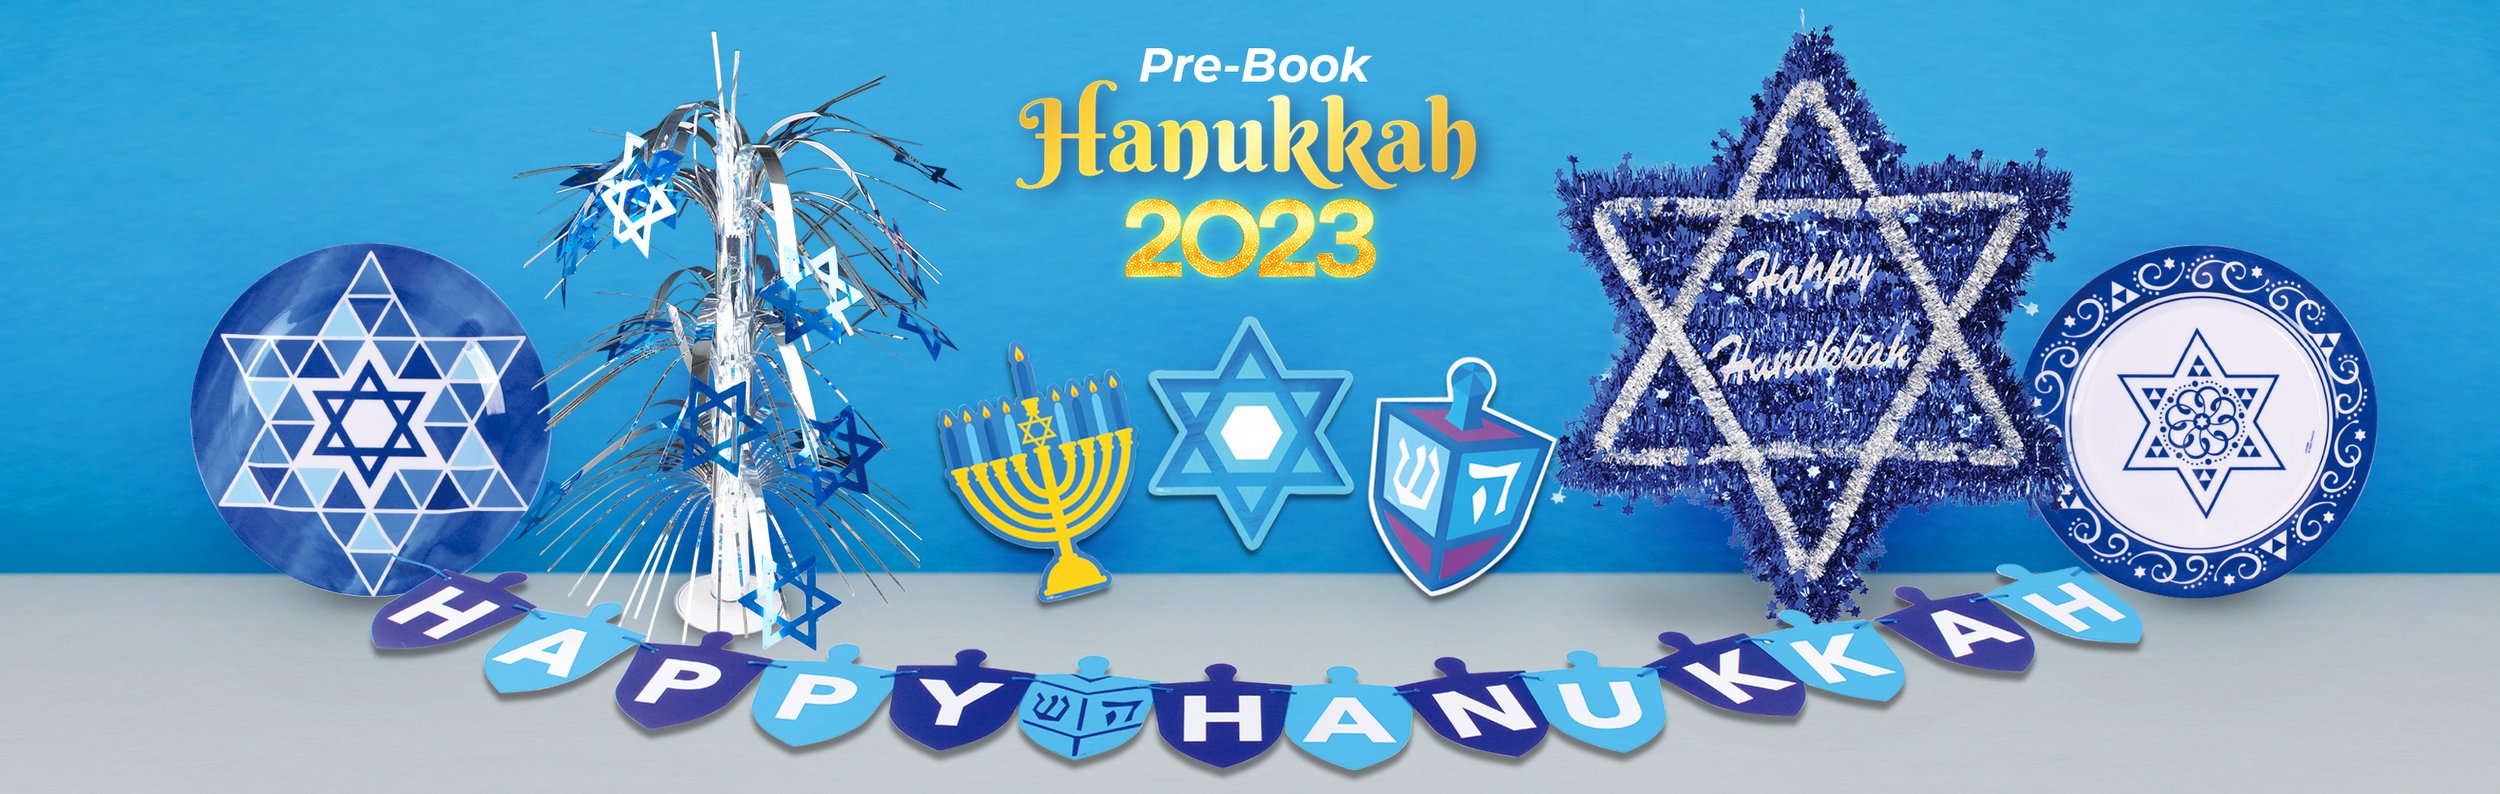 Hanukkah Banner.jpg